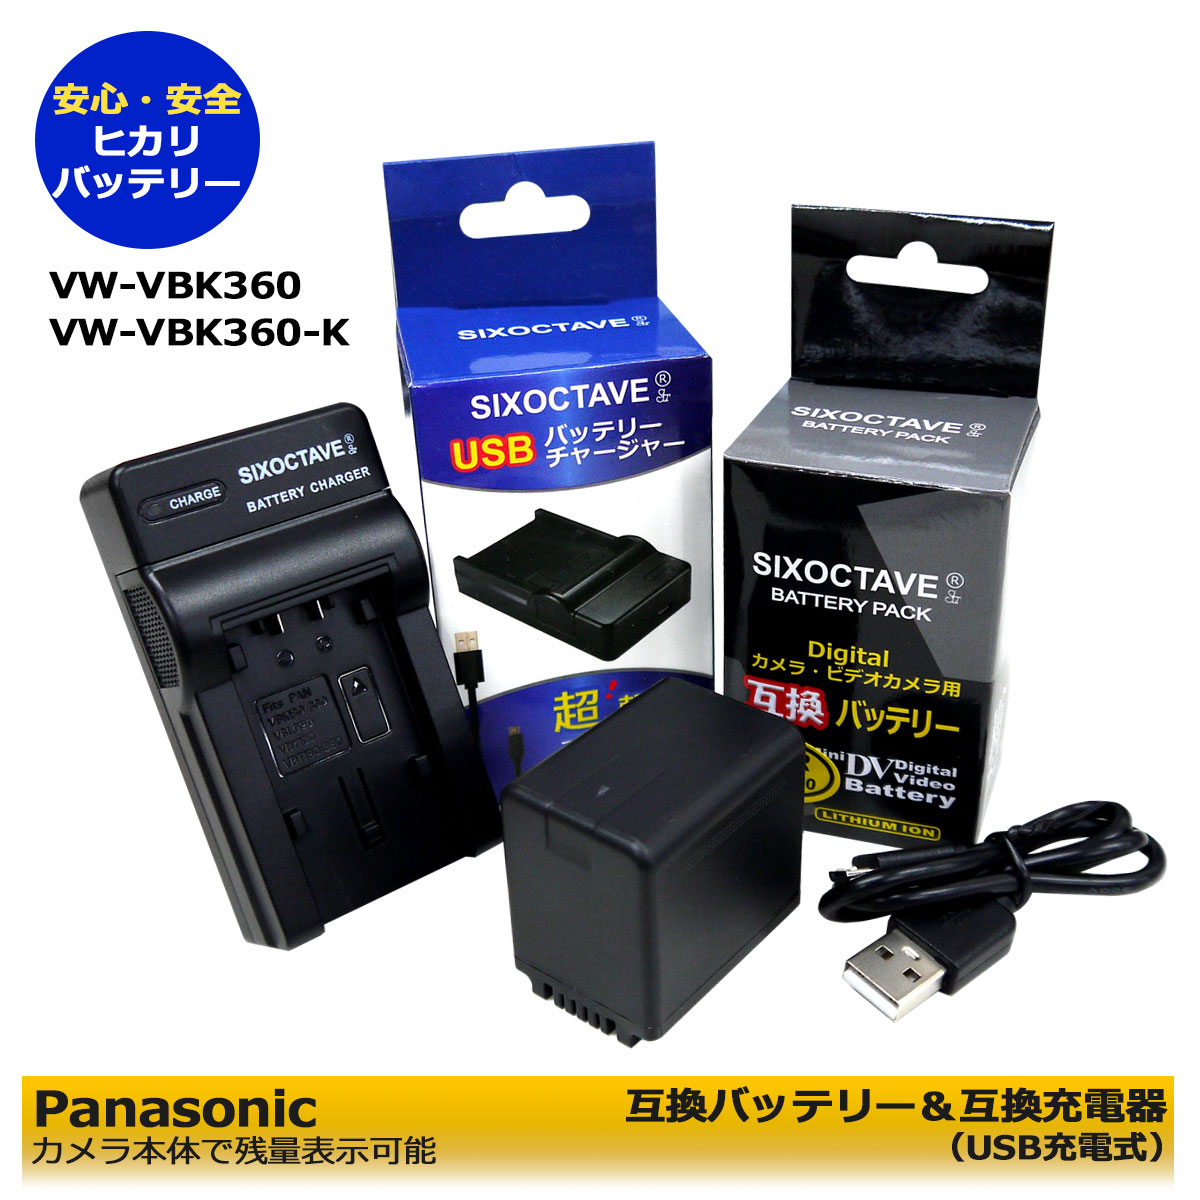 送料無料【あす楽対応】Panasonic パナソニック VW-VBK360-K 互換バッテリー 1個（残量表示可能）と 互換USB充電器VW-BC10-K の2点セット HDC-HS60 / HDC-TM25 / HDC-TM35 / HDC-TM45 / HDC-TM60 / HDC-TM70 デジタルカメラ対応